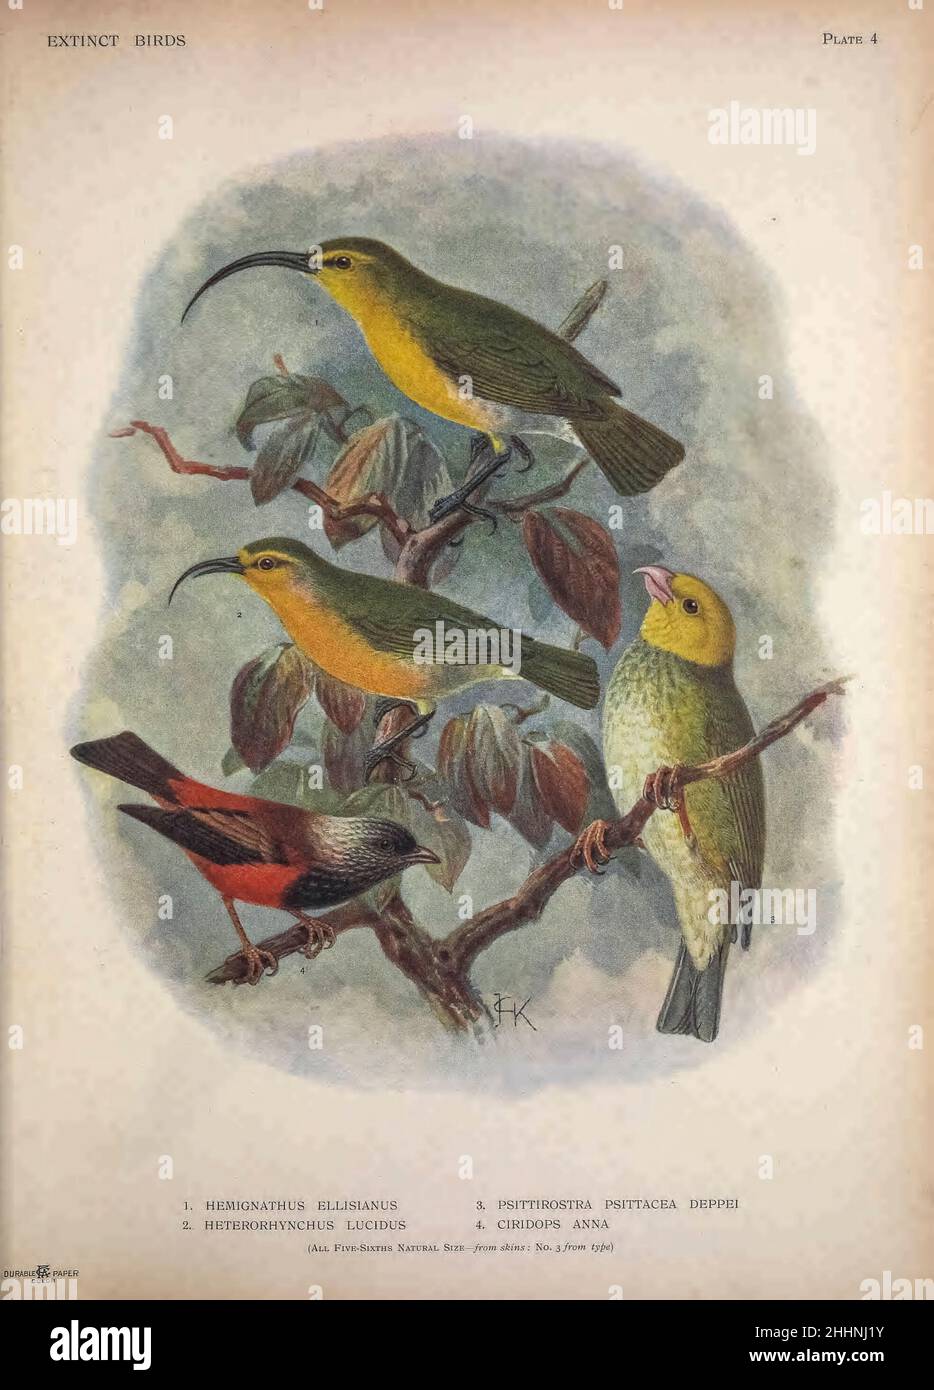 1. Oʻahu ʻakialoa (Akialoa ellisana syn Hemignathus ellisianus). 2. nukupuʻu (Heterorhynchus lucidus). 3. Hawaiianischer Honigschnepfe (Psittirostra psittacea deppei). 4. Stämmige Finke (Ciridops anna) von "ausgestorbenen Vögeln" : ein Versuch, in einem Band eine kurze Darstellung jener Vögel zu vereinen, die in der Geschichte ausgestorben sind : das heißt, innerhalb der letzten sechs oder siebenhundert Jahre : Hinzu kommen noch einige wenige, die noch existieren, aber am Rande des Aussterbens stehen. Von Baron, Lionel Walter Rothschild, 1868-1937 Veröffentlicht 1907 als limitiertes Buch in London von Hutchinson & Co Stockfoto